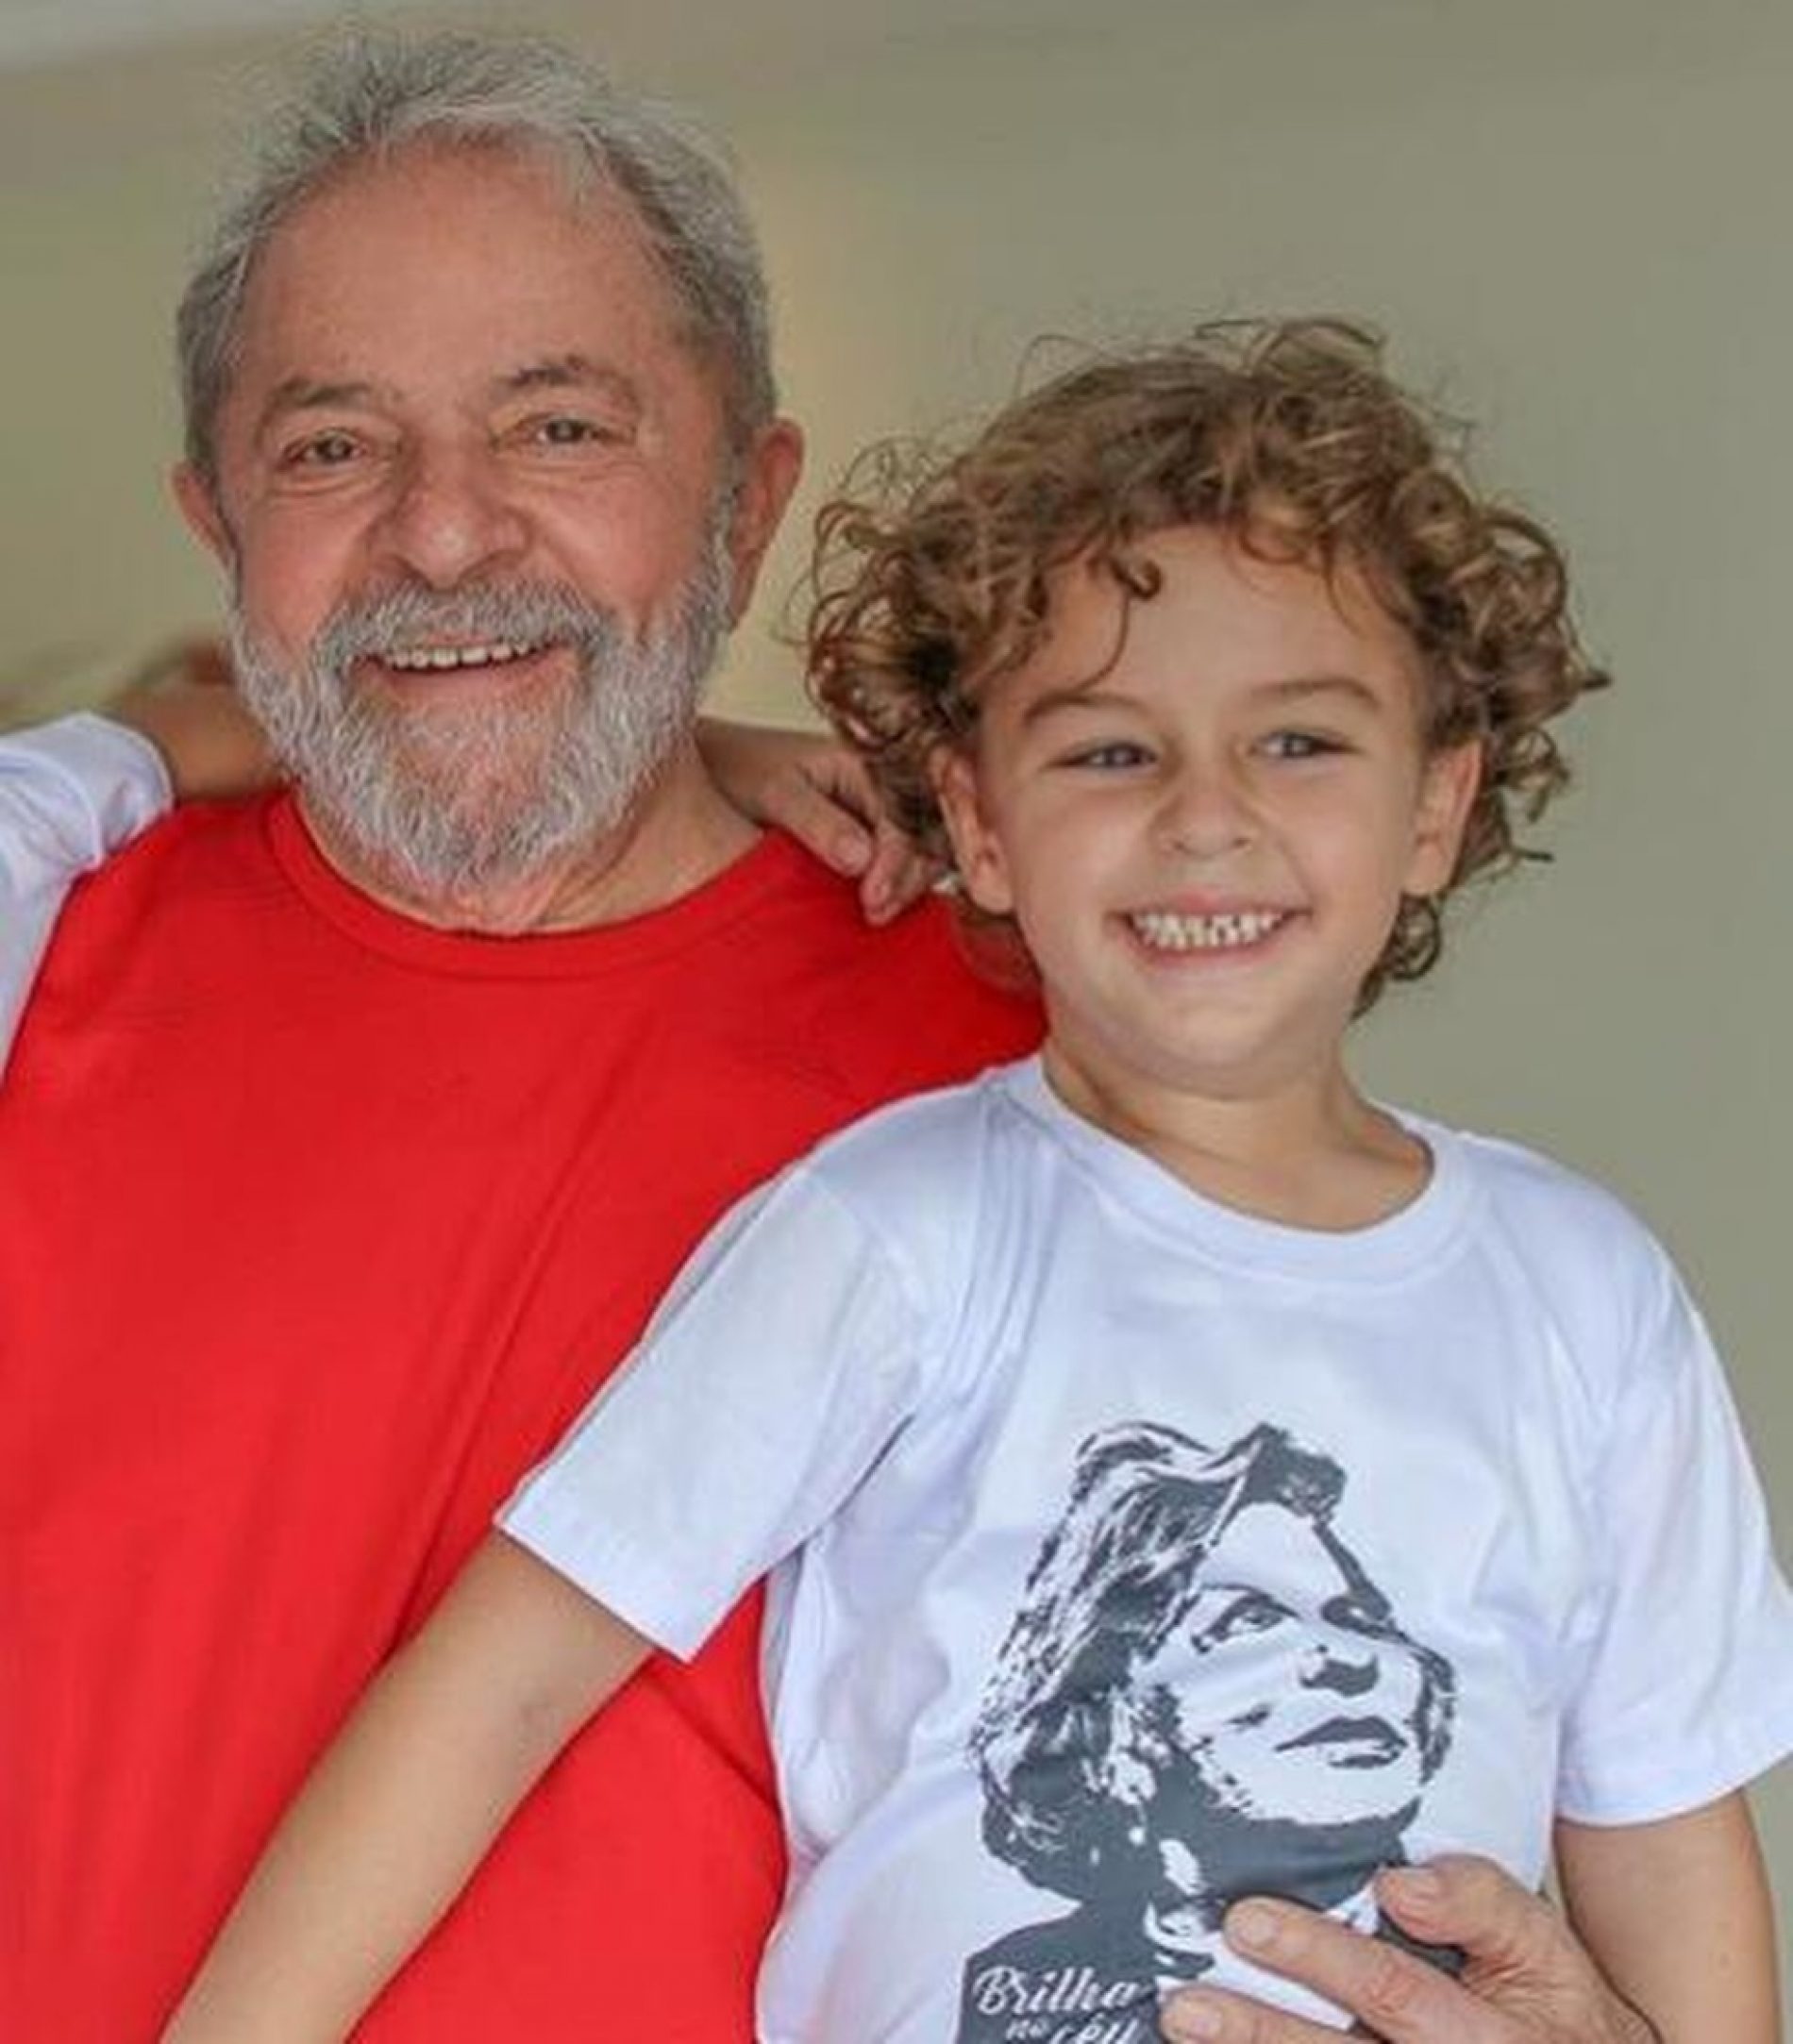 Neto do ex-presidente Lula, morre de meningite bacteriana em SP